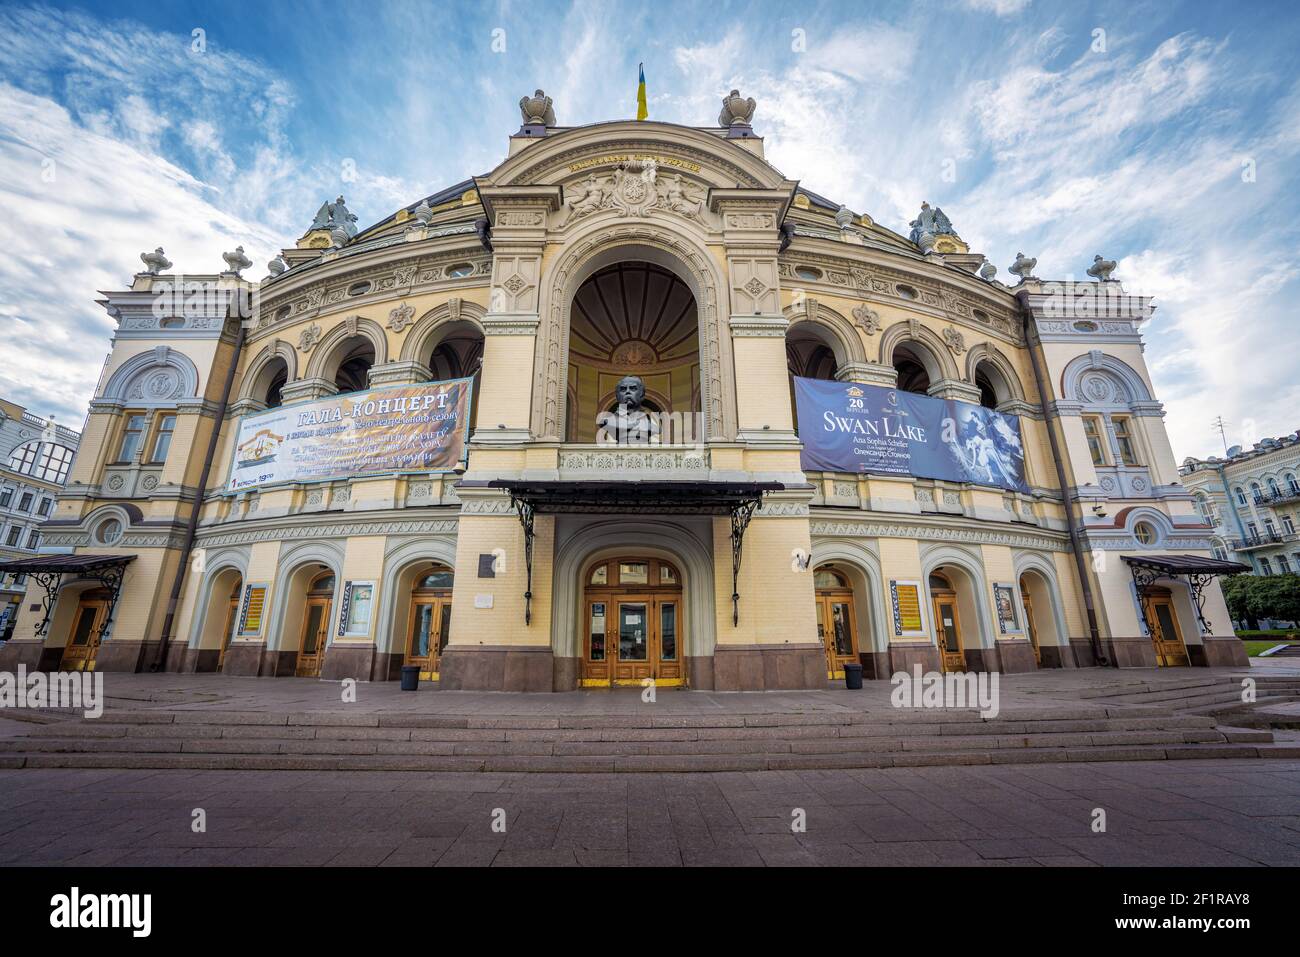 National Opera of Ukraine - Kiev, Ukraine Stock Photo